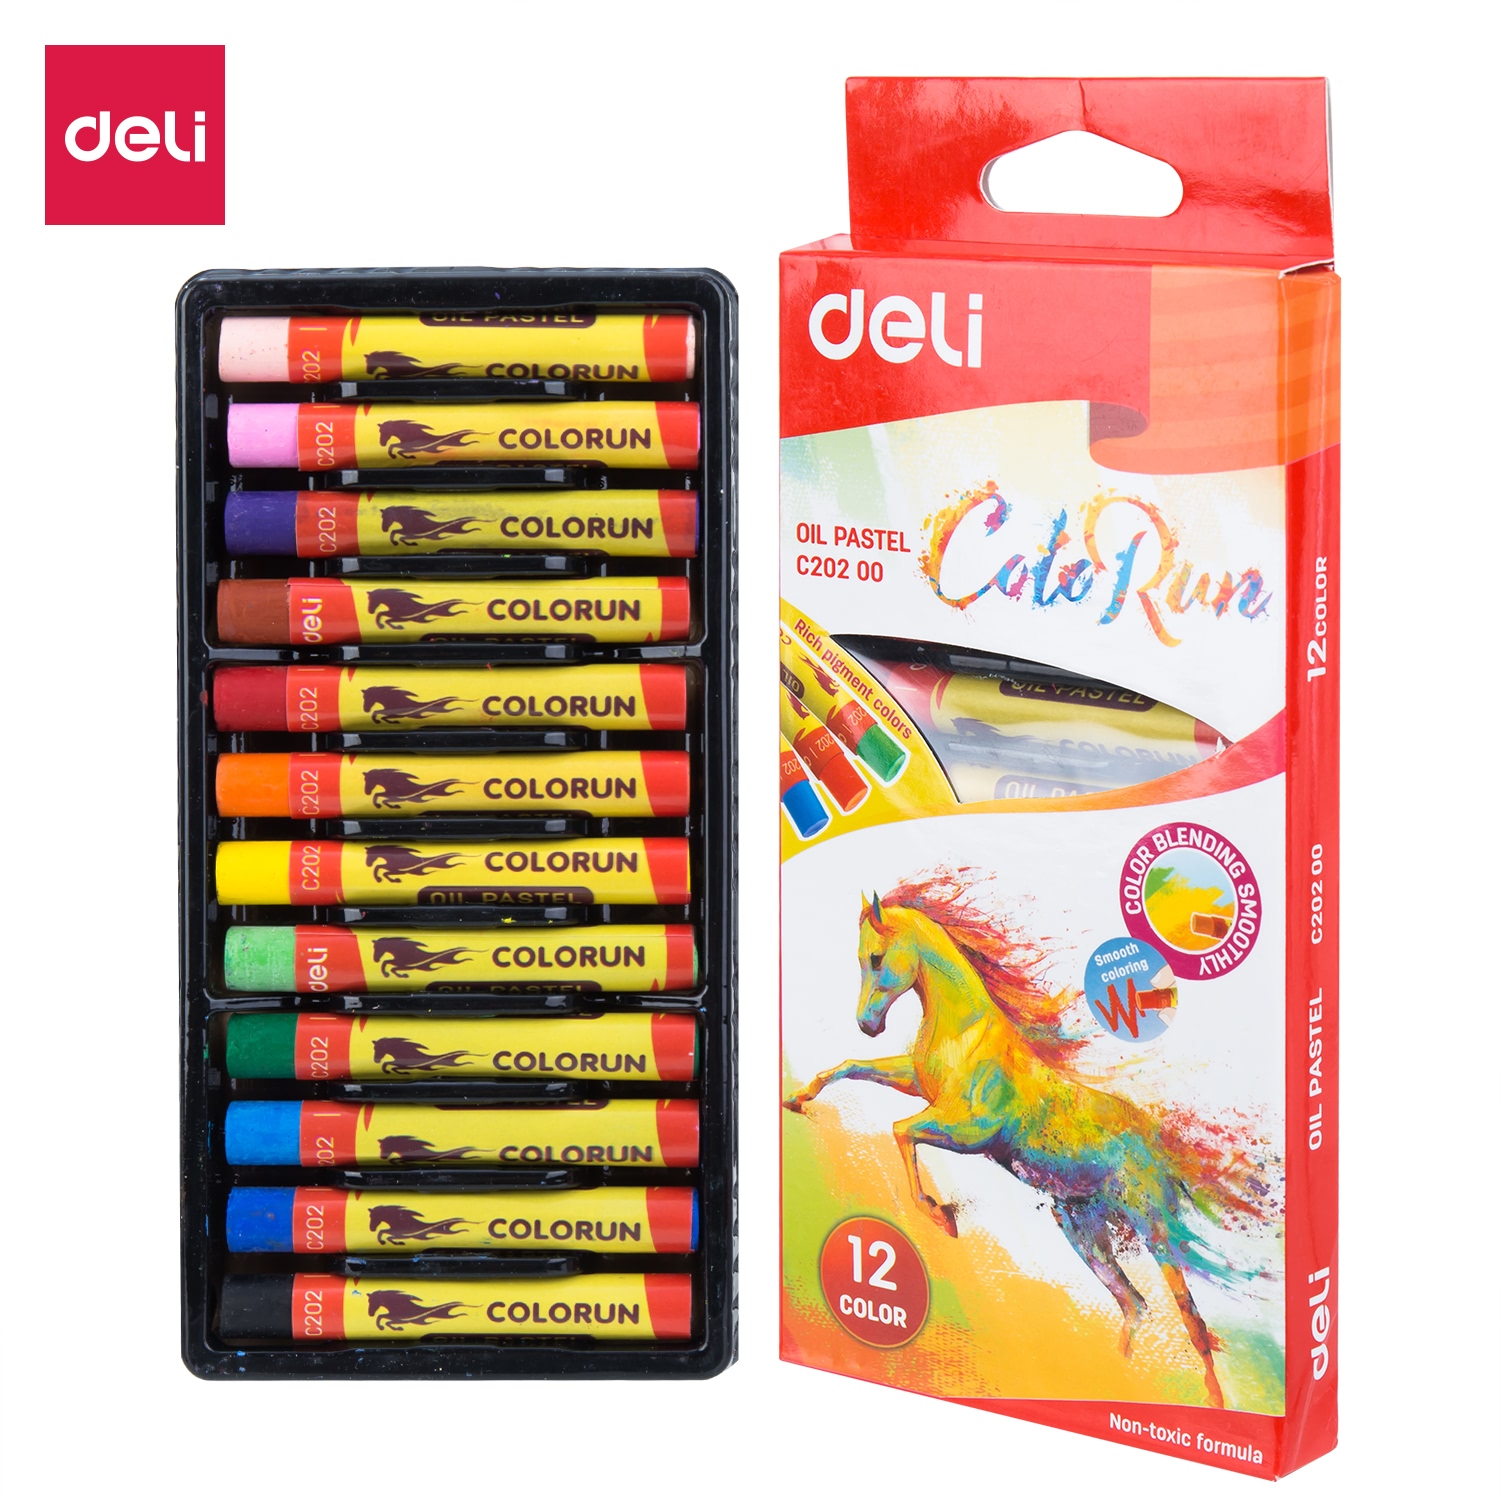 สีเทียน ดินสอสี ดินสอสีน้อย 12สี สีสว่าง เครื่องเขียน สีวาดรูป อุปกรณ์ระบายสี อุปกรณ์วาดภาพ วาดภาพระบายส paintstick